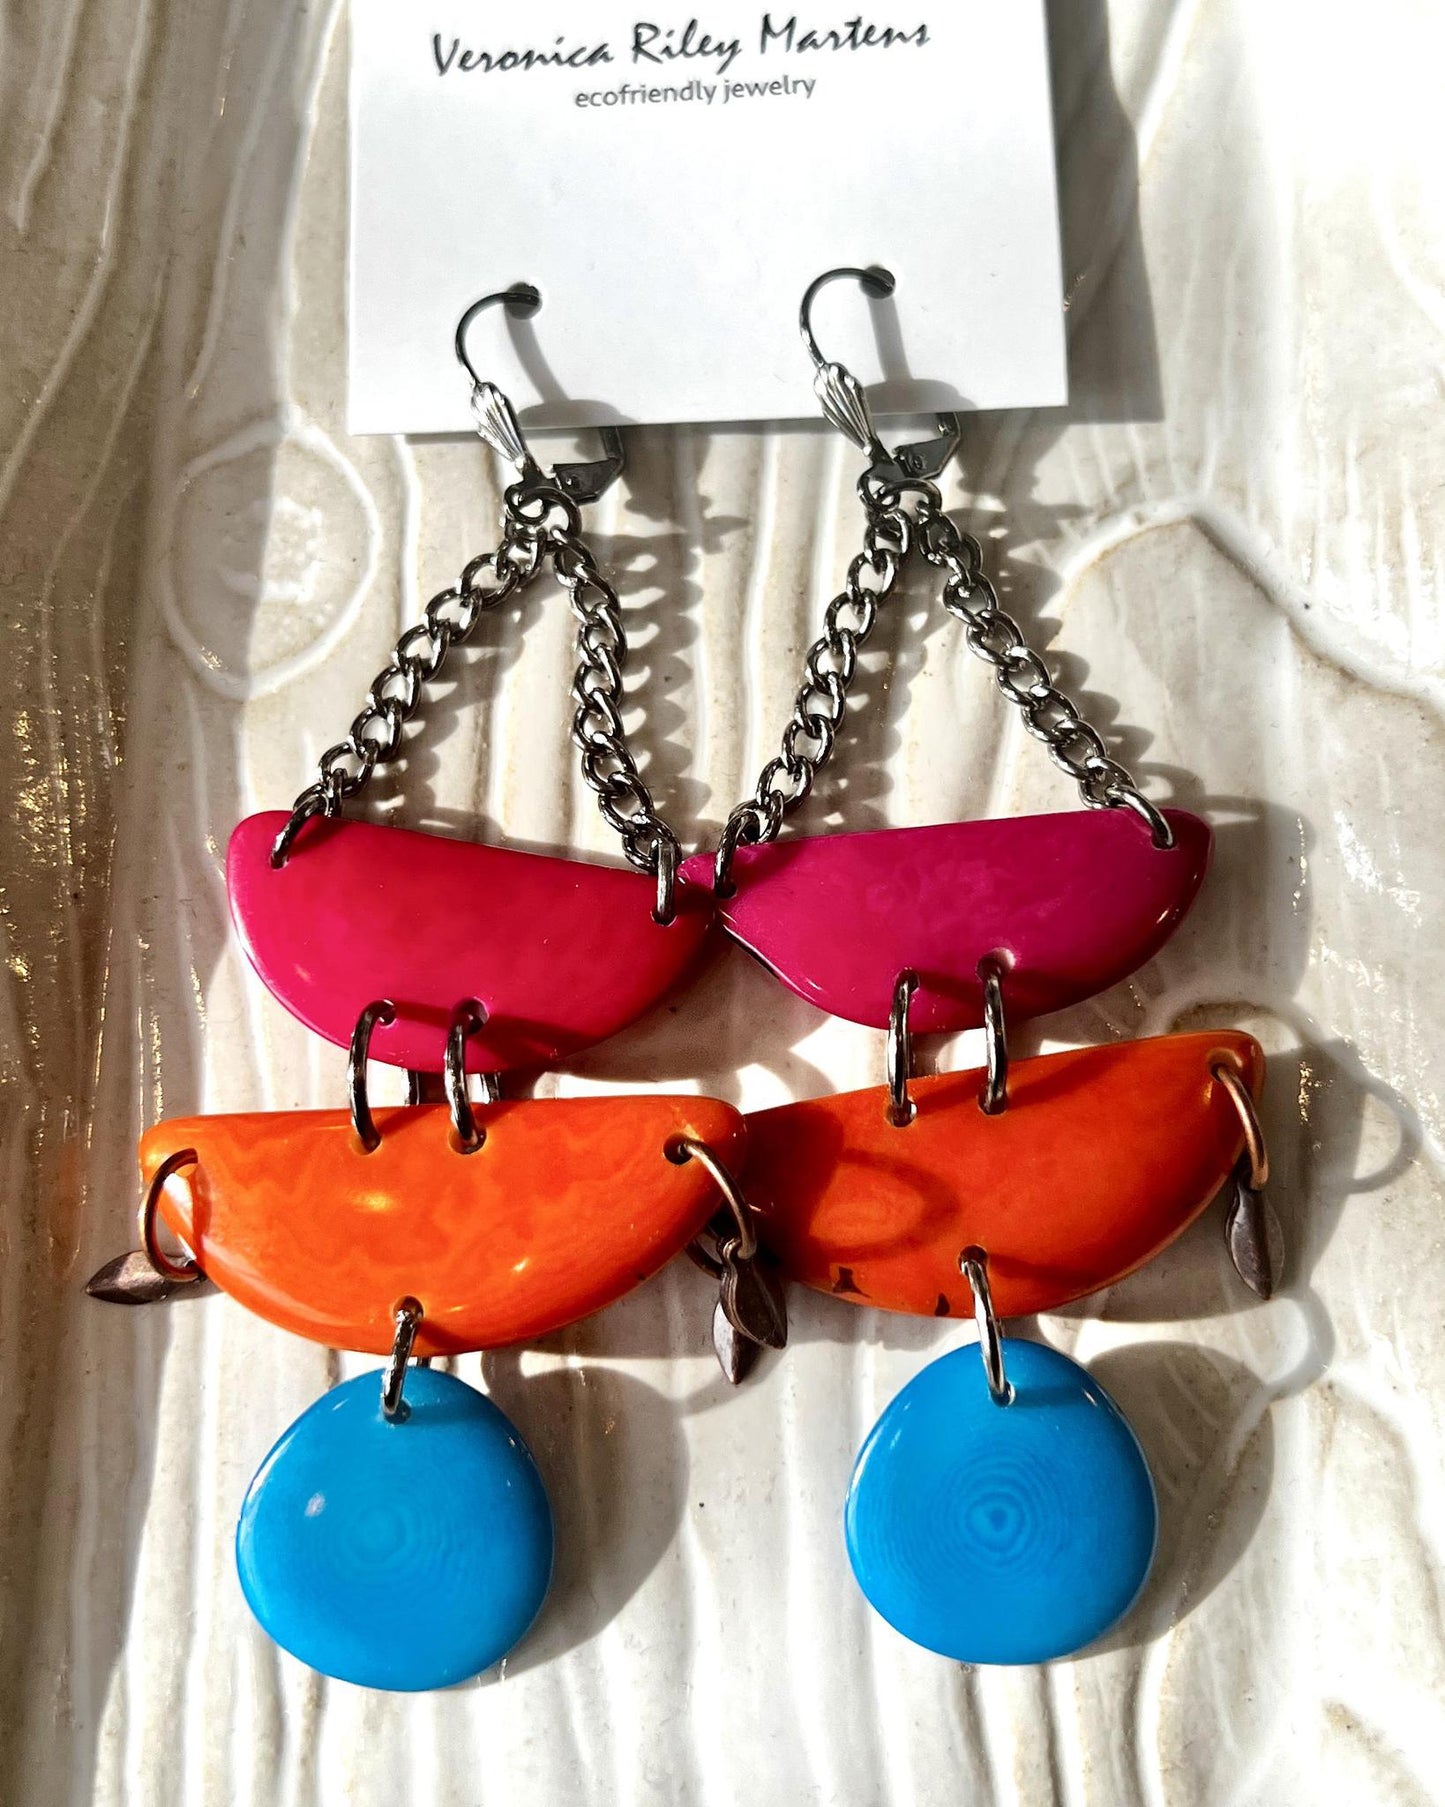 Veronica Riley Martens Chandelier Earrings - Pink, Orange, Blue